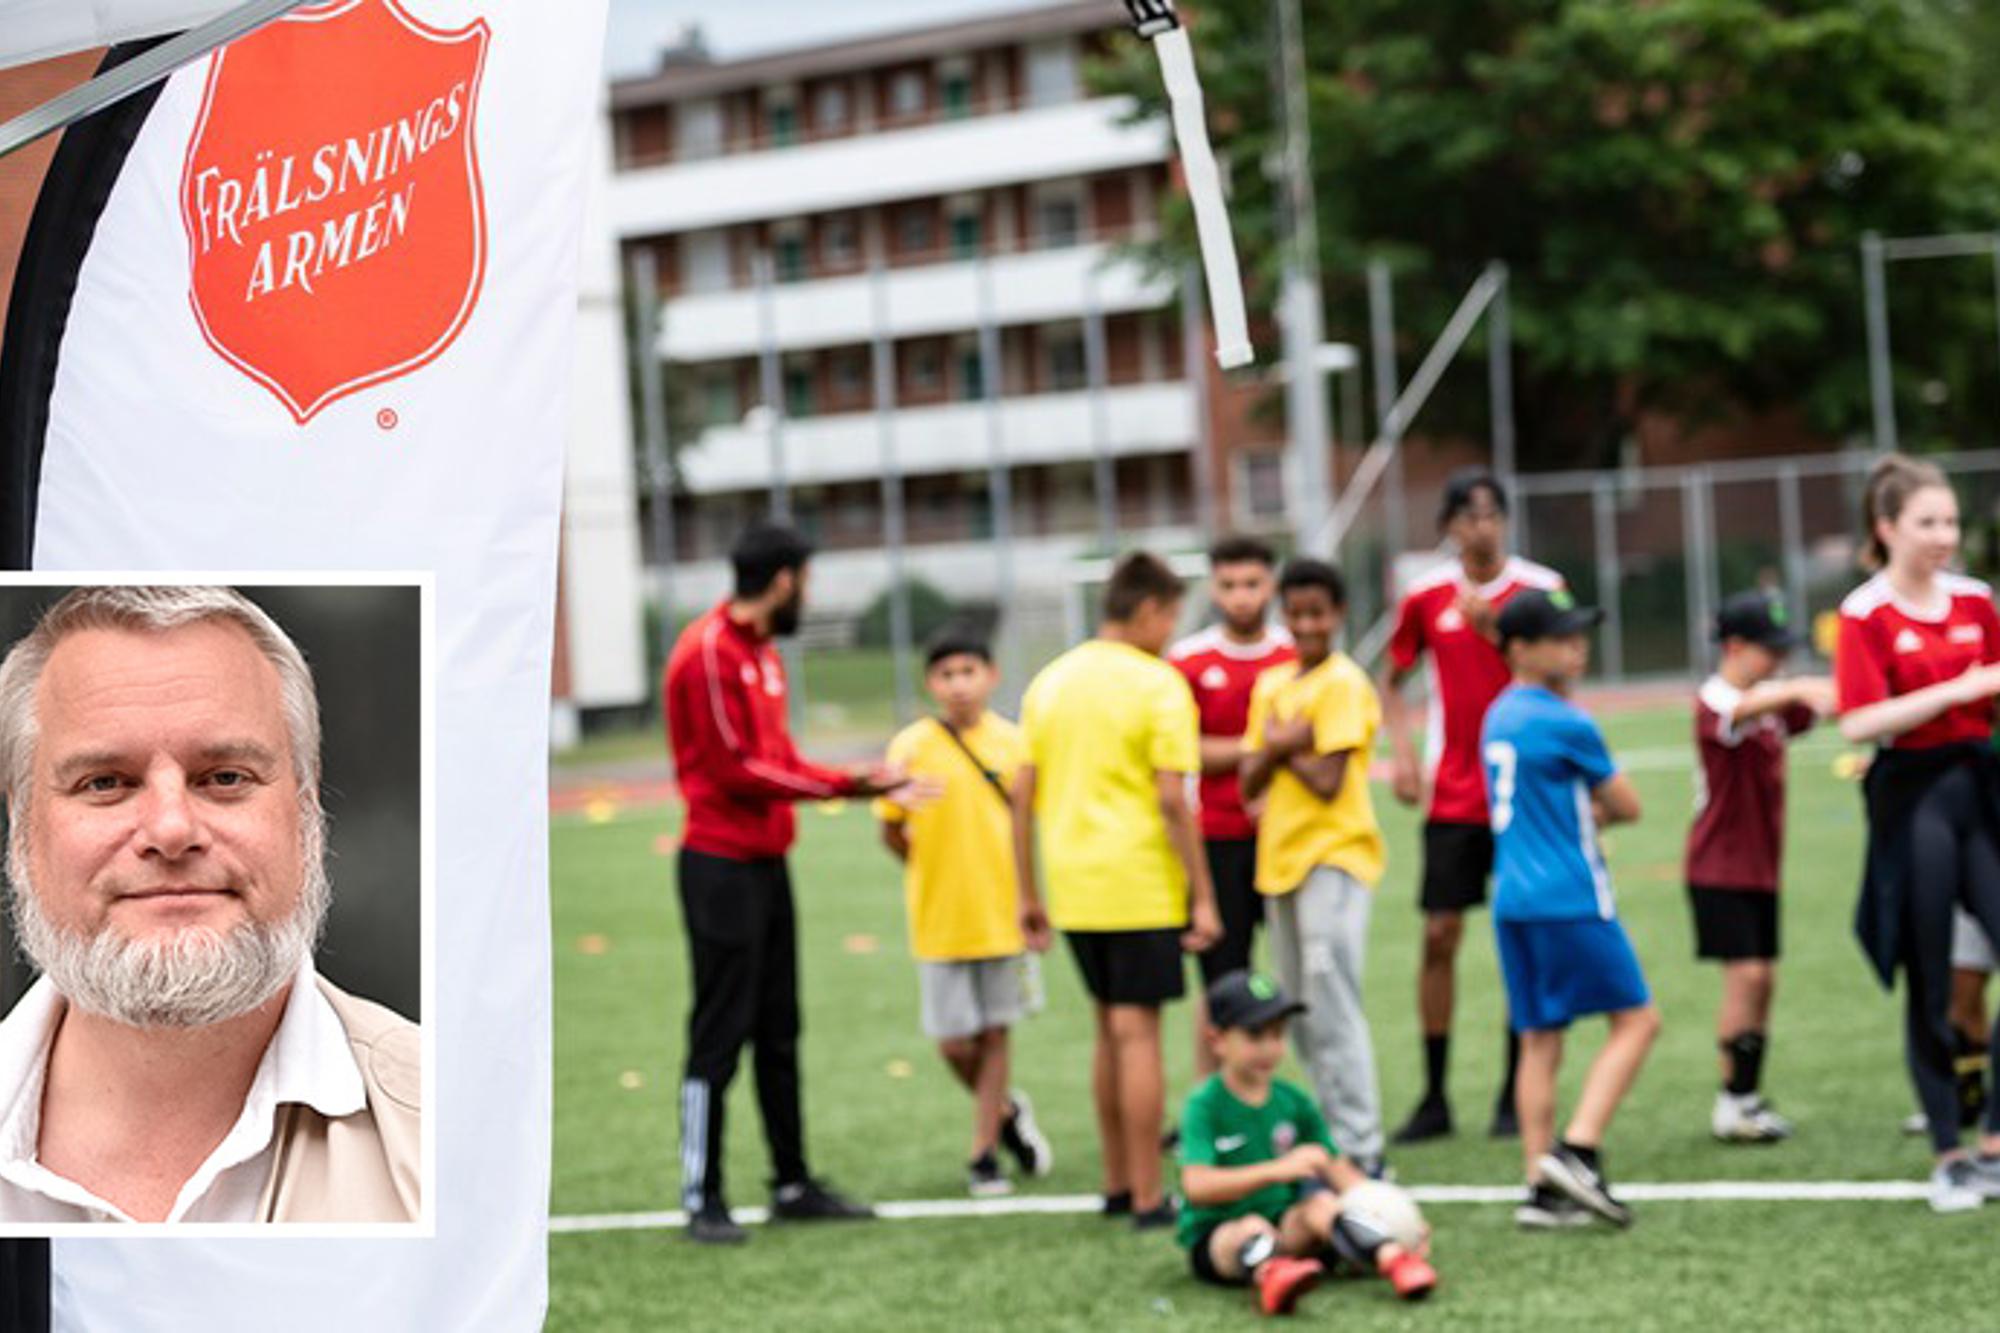 Till vänster: En mindre bild på Robert Tuftström som leder Frälsningsarméns sociala arbete. Till höger: Fokus på en Frälsningsarmén-flagga och till höger syns ett gäng barn och ledare i fotbollskläder. Barnen och ledarna står samlade på en fotbollsplan.